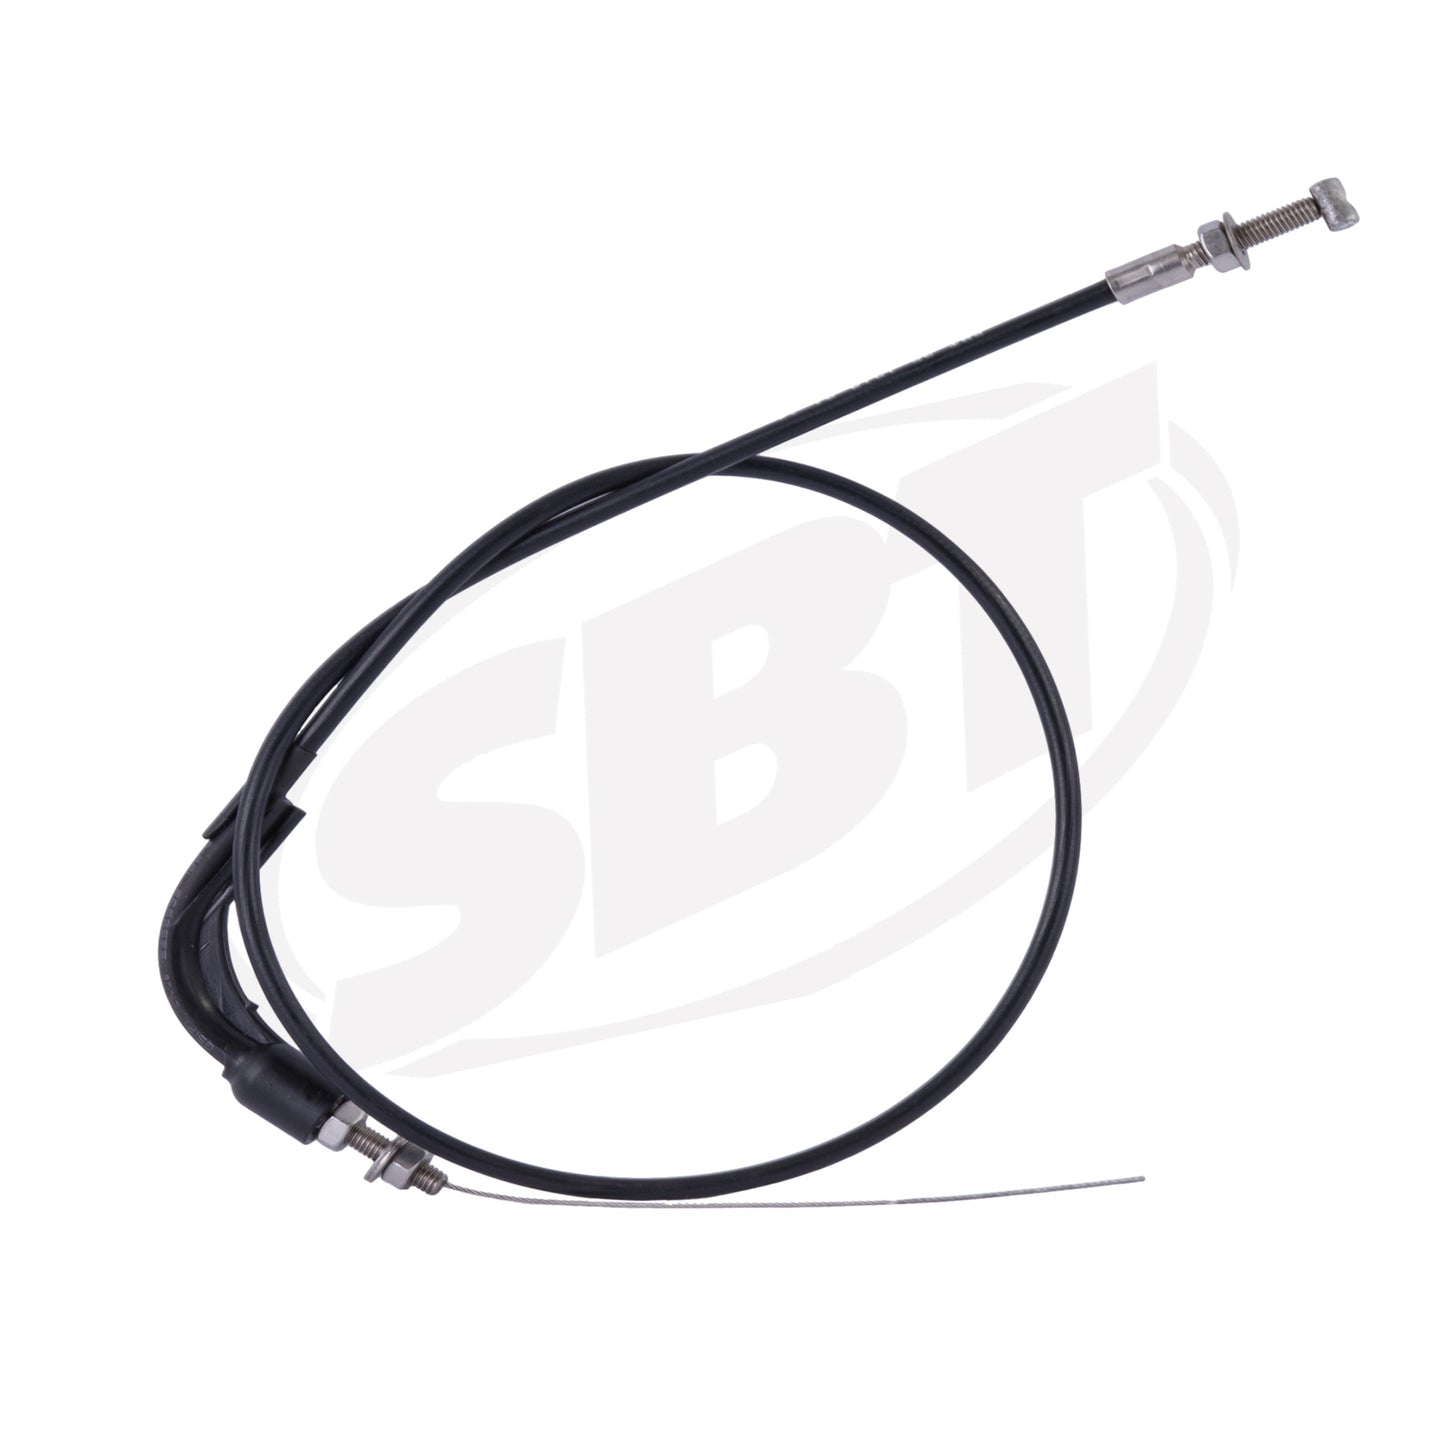 SBT Kawasaki Choke Cable 1200 STX R 59401-3727 2002 2003 2004 2005 ( PRE ORDER )